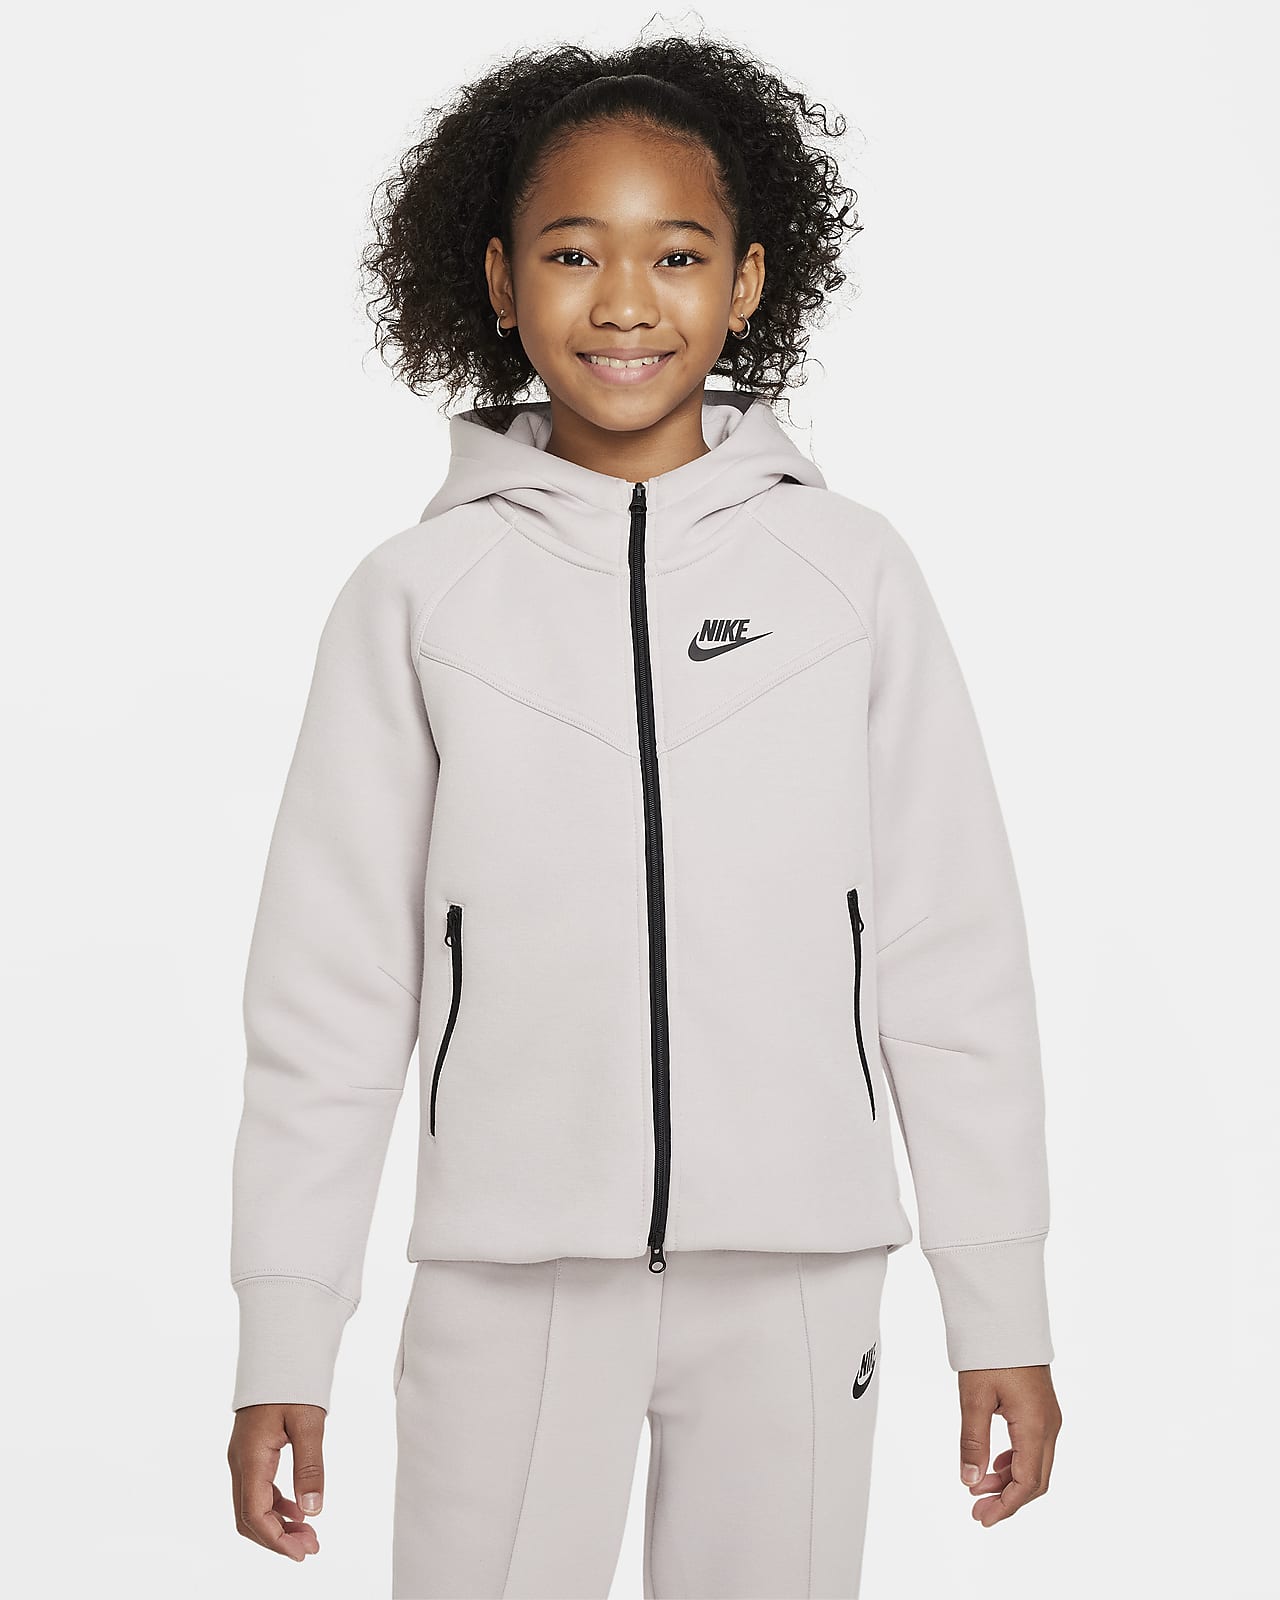 Nike Sportswear Tech Fleece Hoodie mit durchgehendem Reißverschluss für ältere Kinder (Mädchen)